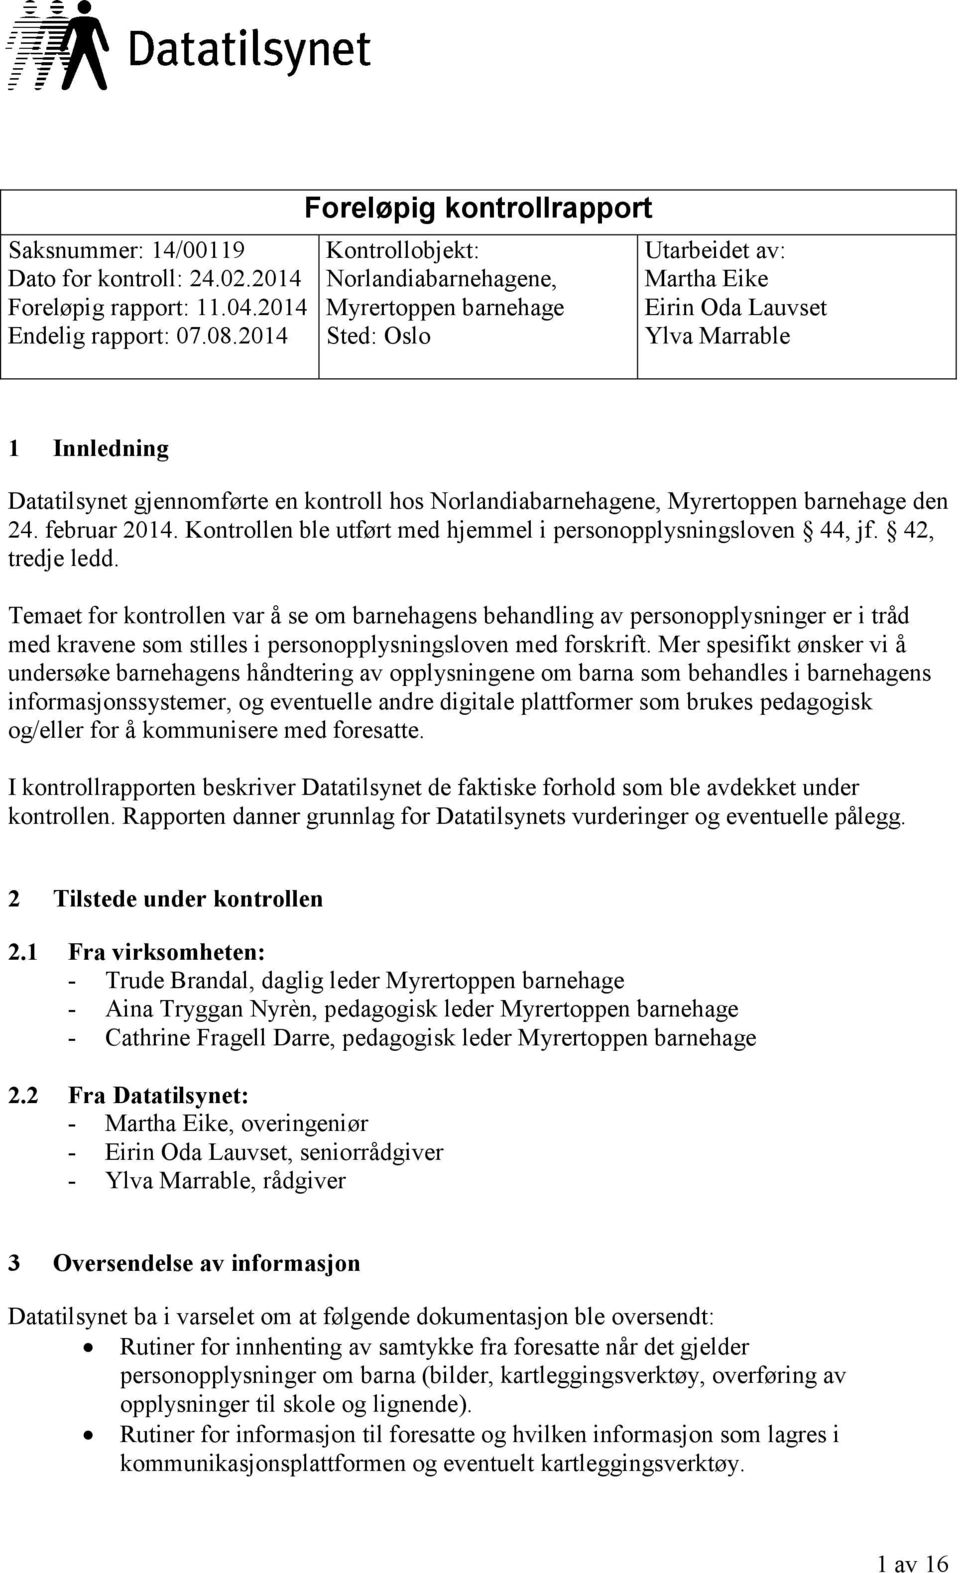 en kontroll hos Norlandiabarnehagene, Myrertoppen barnehage den 24. februar 2014. Kontrollen ble utført med hjemmel i personopplysningsloven 44, jf. 42, tredje ledd.